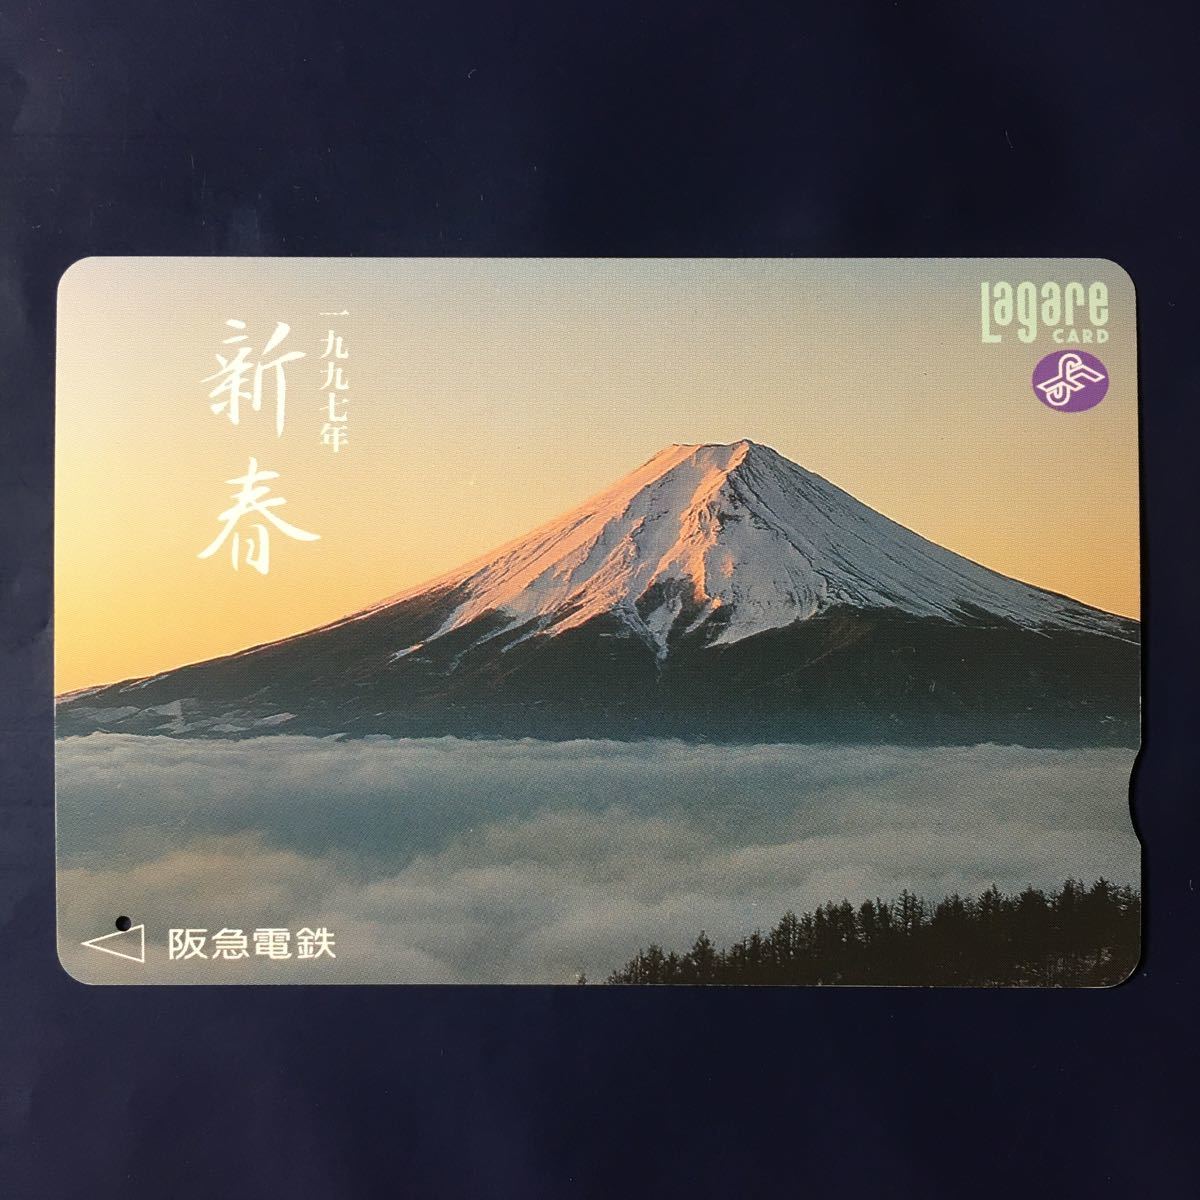 1997年1月2日発売柄ー初春記念「富士山」ー阪急ラガールカード(使用済スルッとKANSAI)_画像1